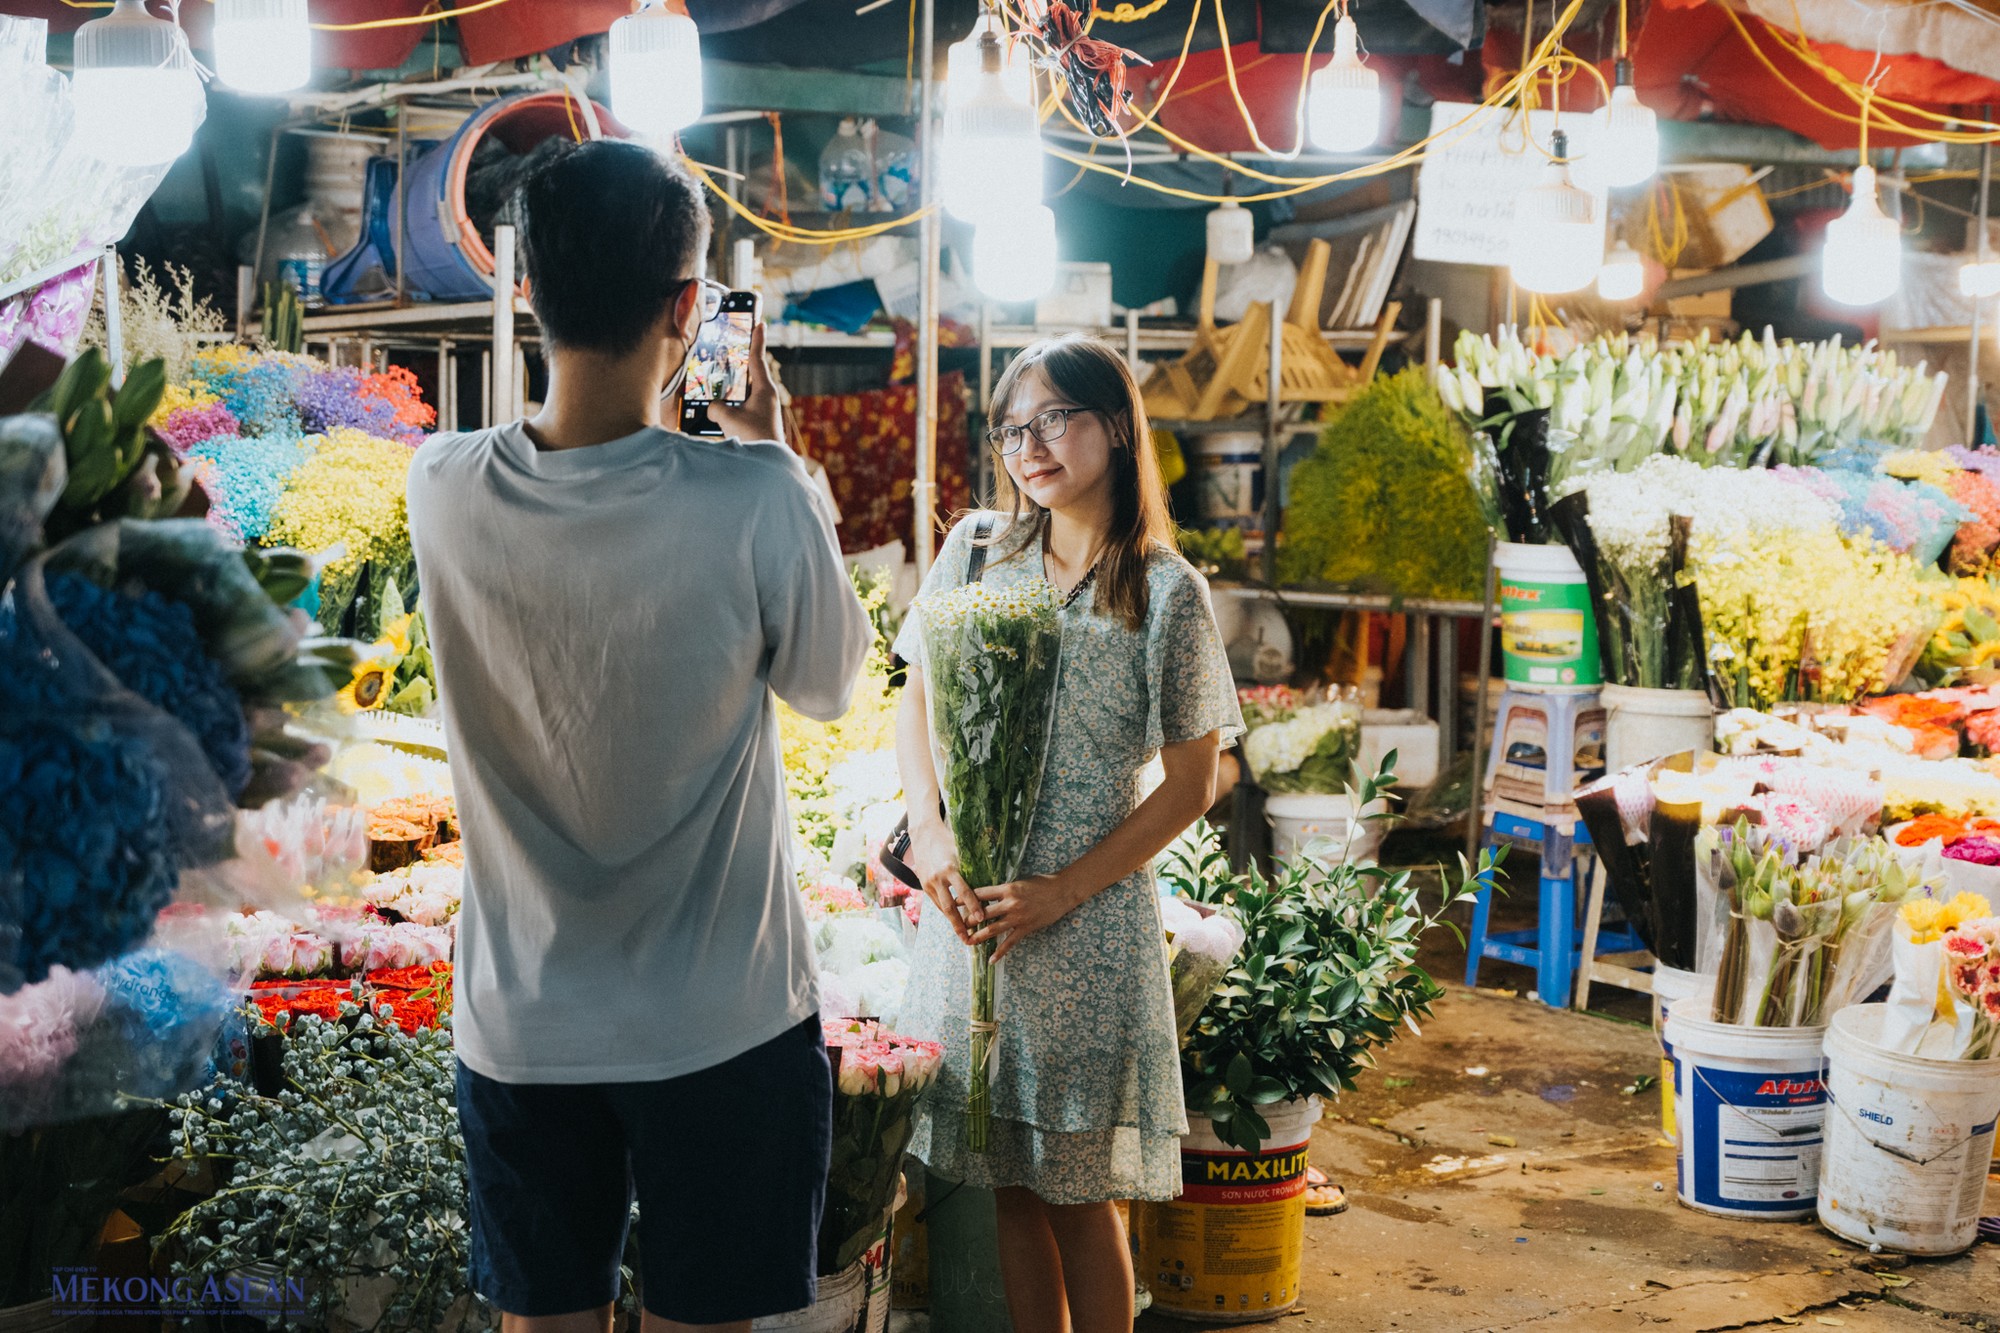 Đa phần du khách ở trong khu chợ là những người trẻ hoặc những cặp đôi bị thu hút bởi hương sắc của bạt ngàn những bông hoa.